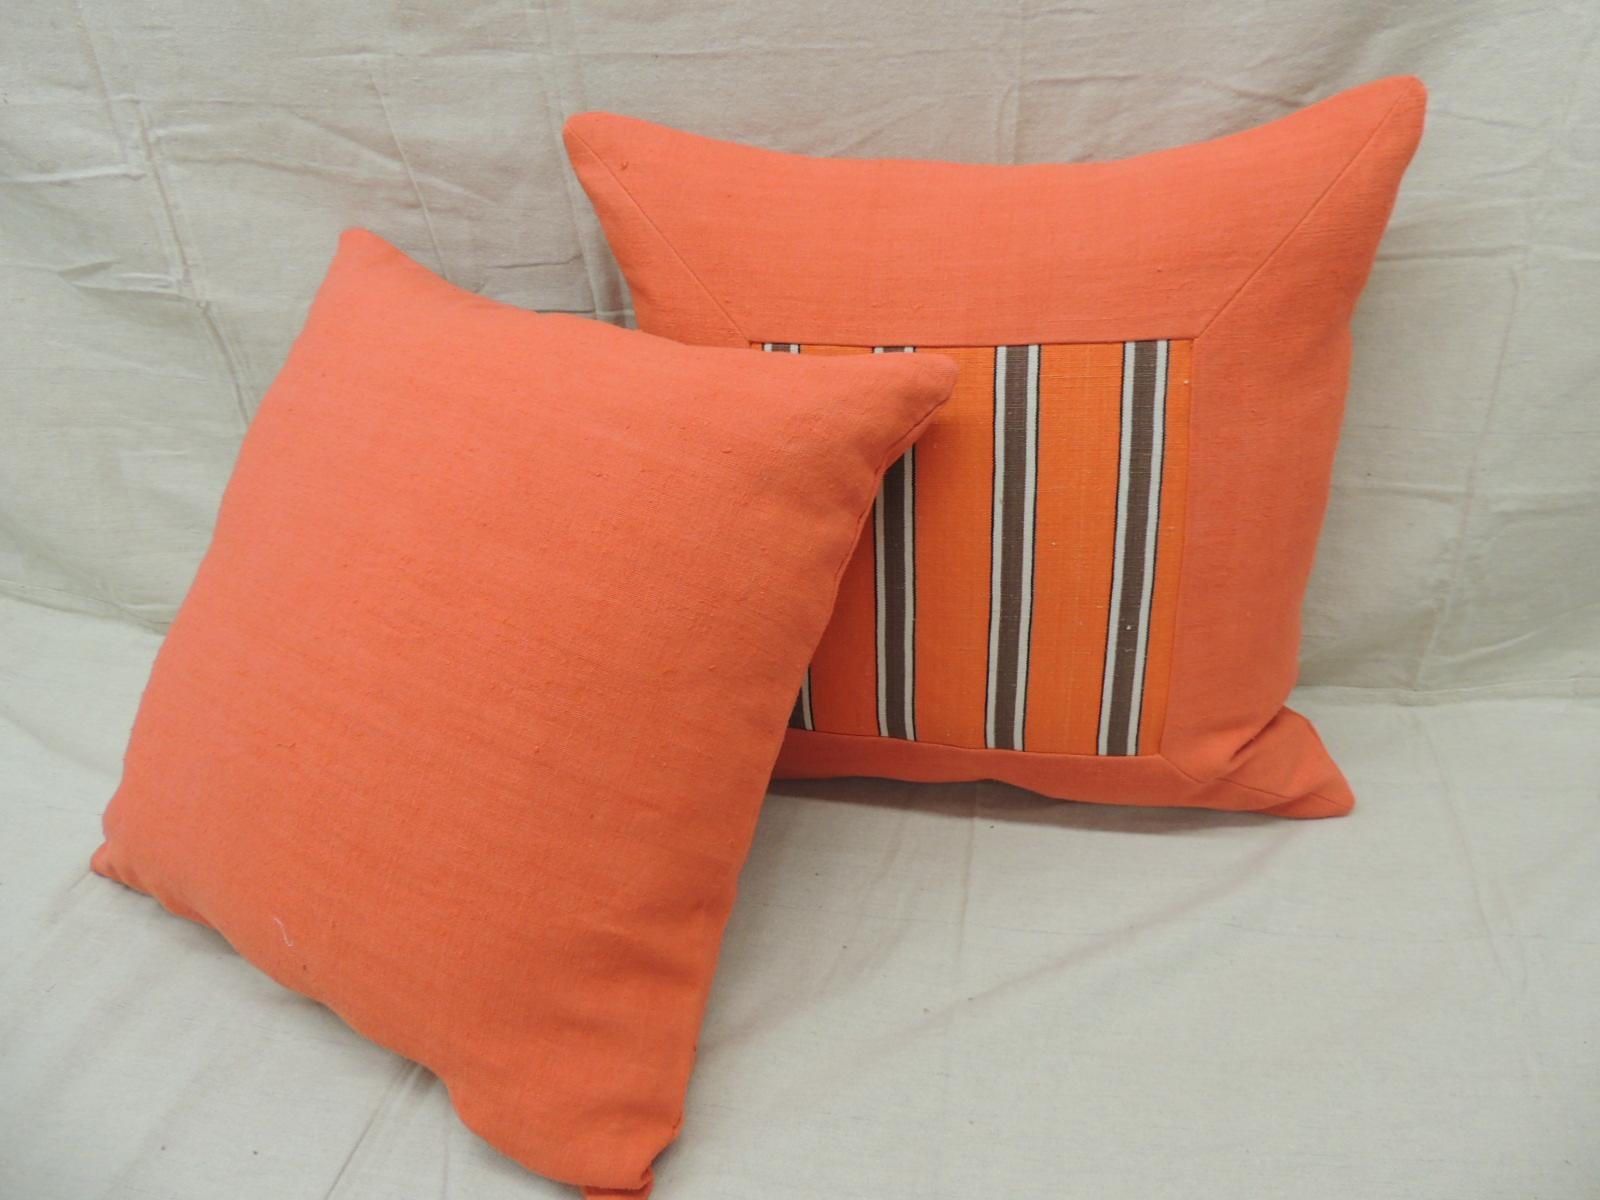 orange throw pillows